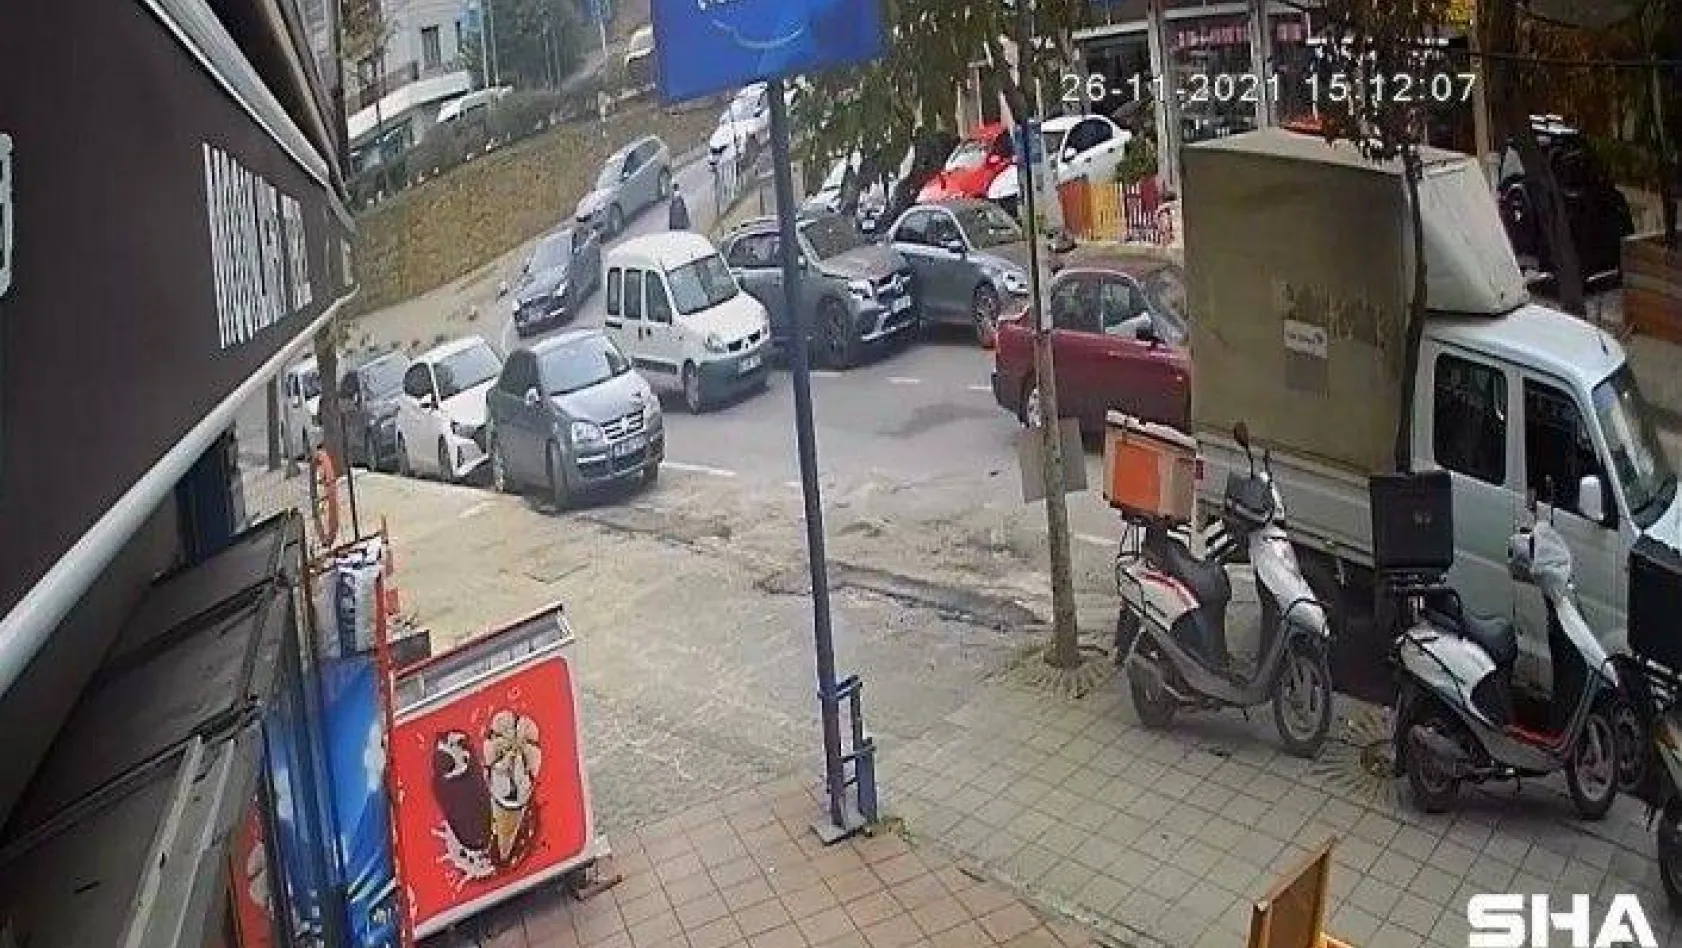 Kadıköy'de kadın sürücü fren yerine gaza bastı, ortalık savaş alanına döndü